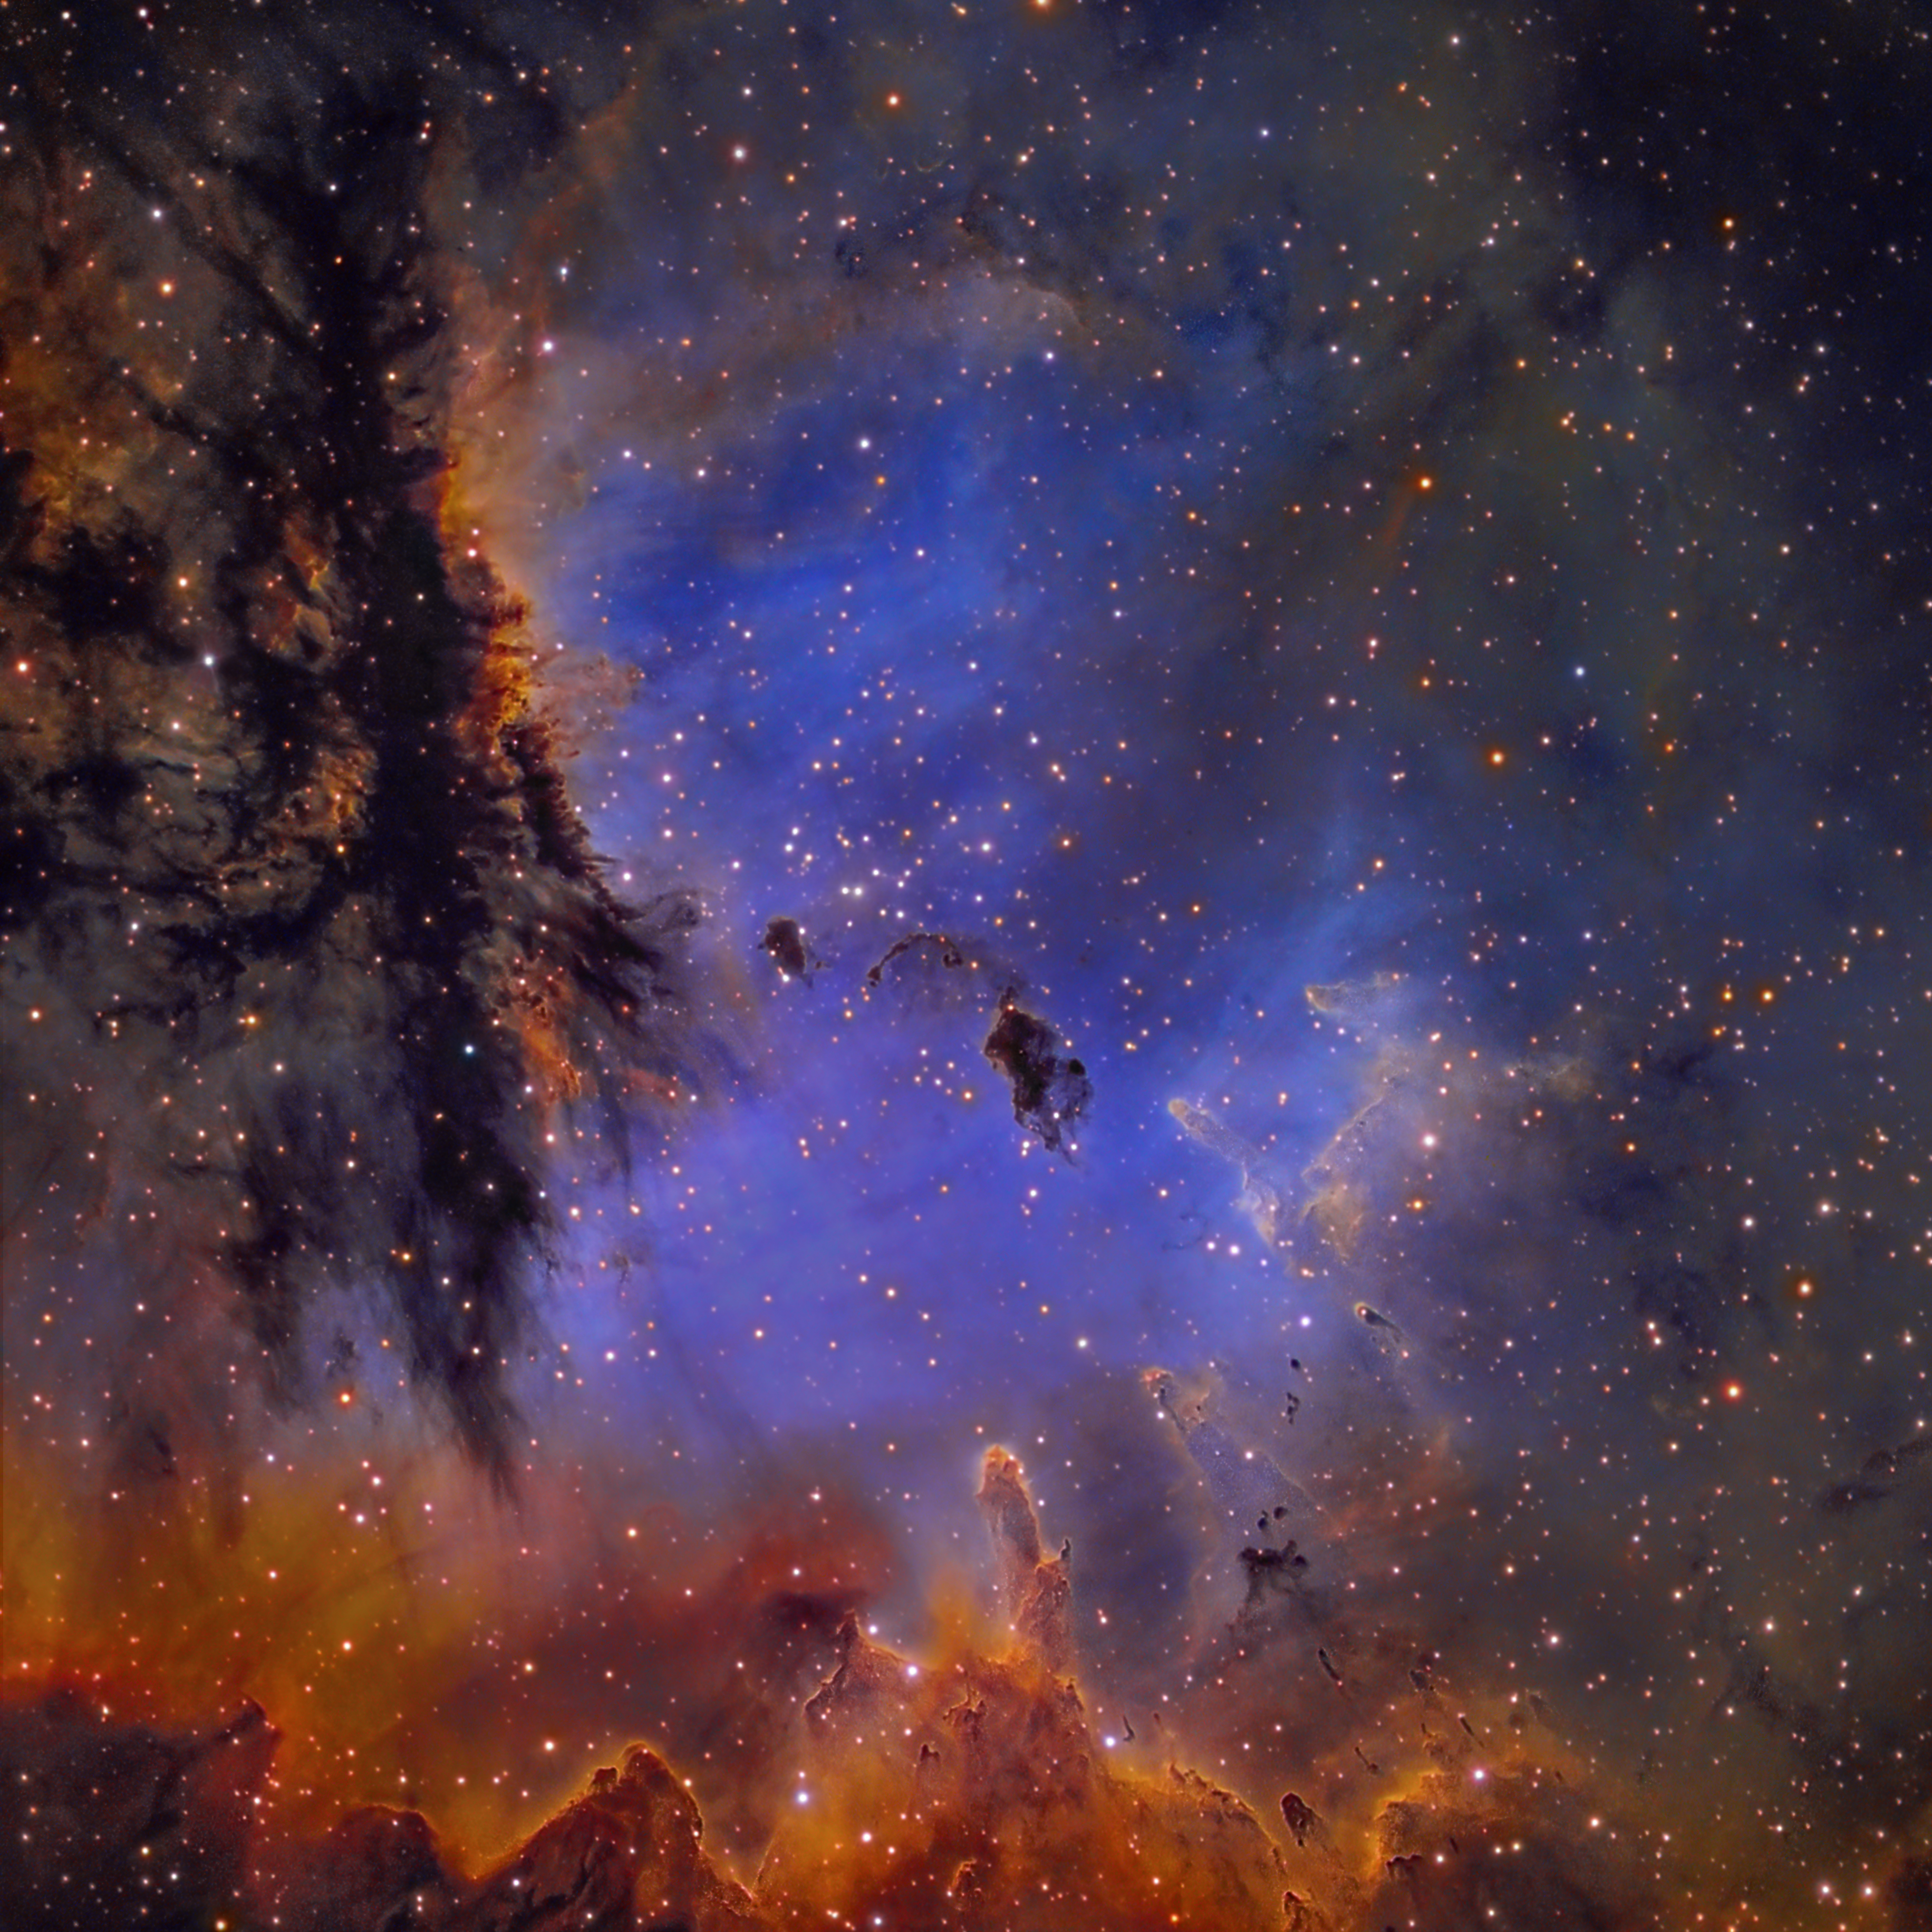 Nebula Ngc 281 Wallpapers